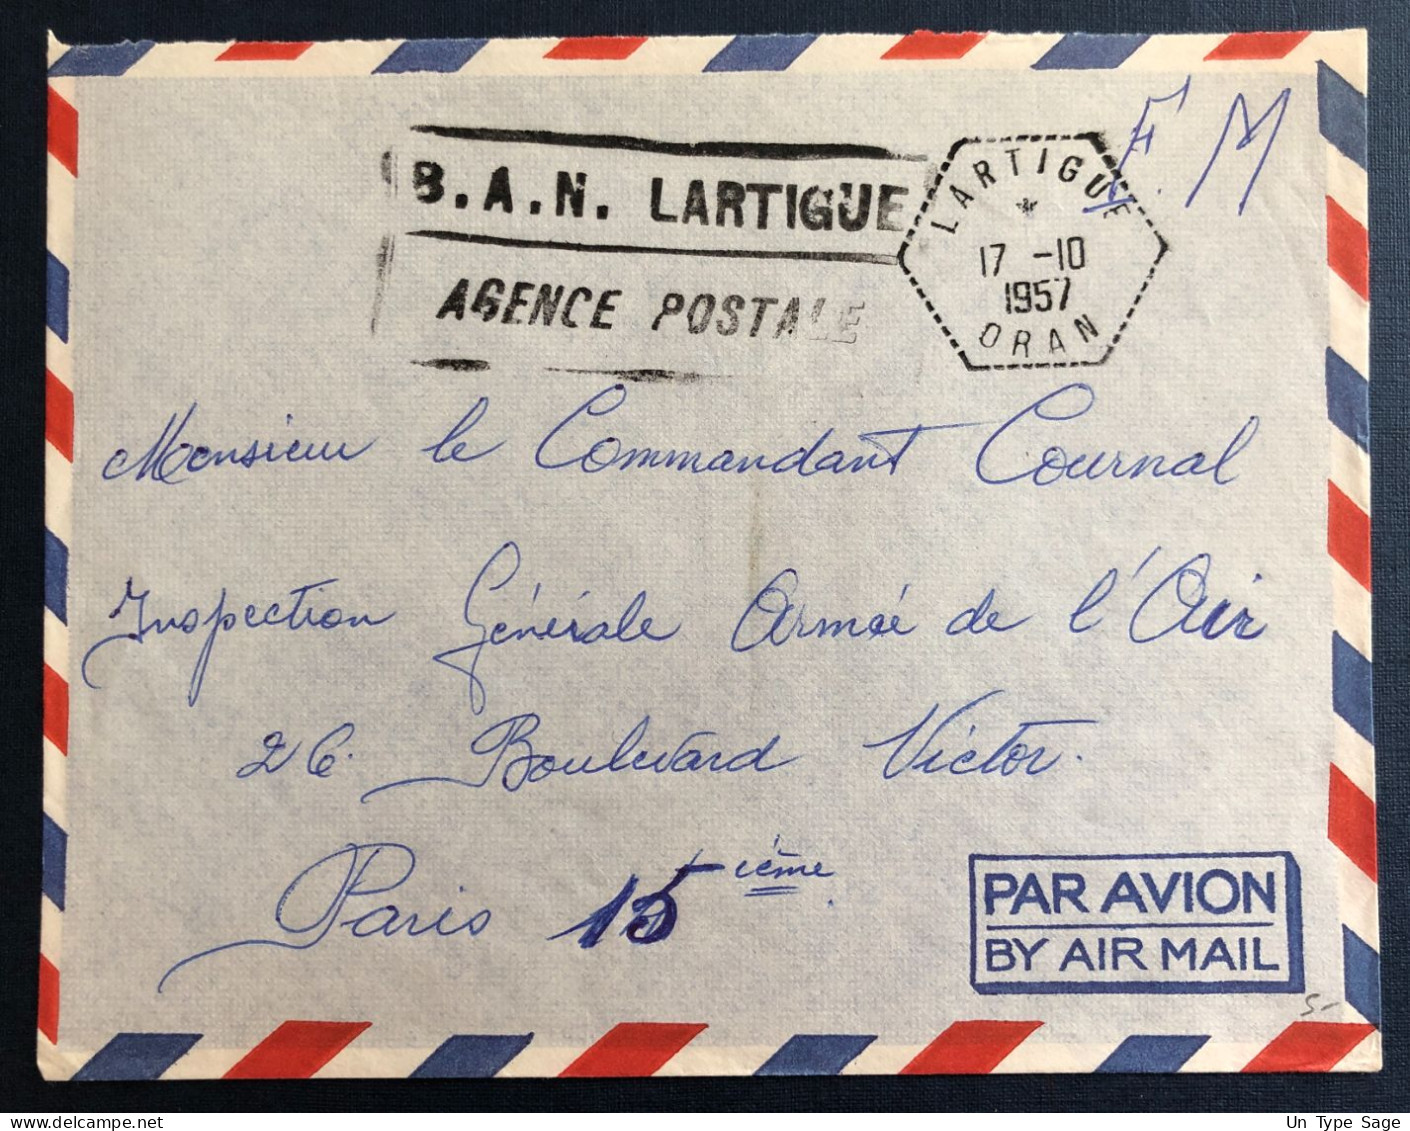 Algérie, Sur Enveloppe TAD Lartigue, Oran 17.10.1957 + Griffe B.A.N. LARTIGUE / AGENCE POSTALE - (B3349) - Covers & Documents